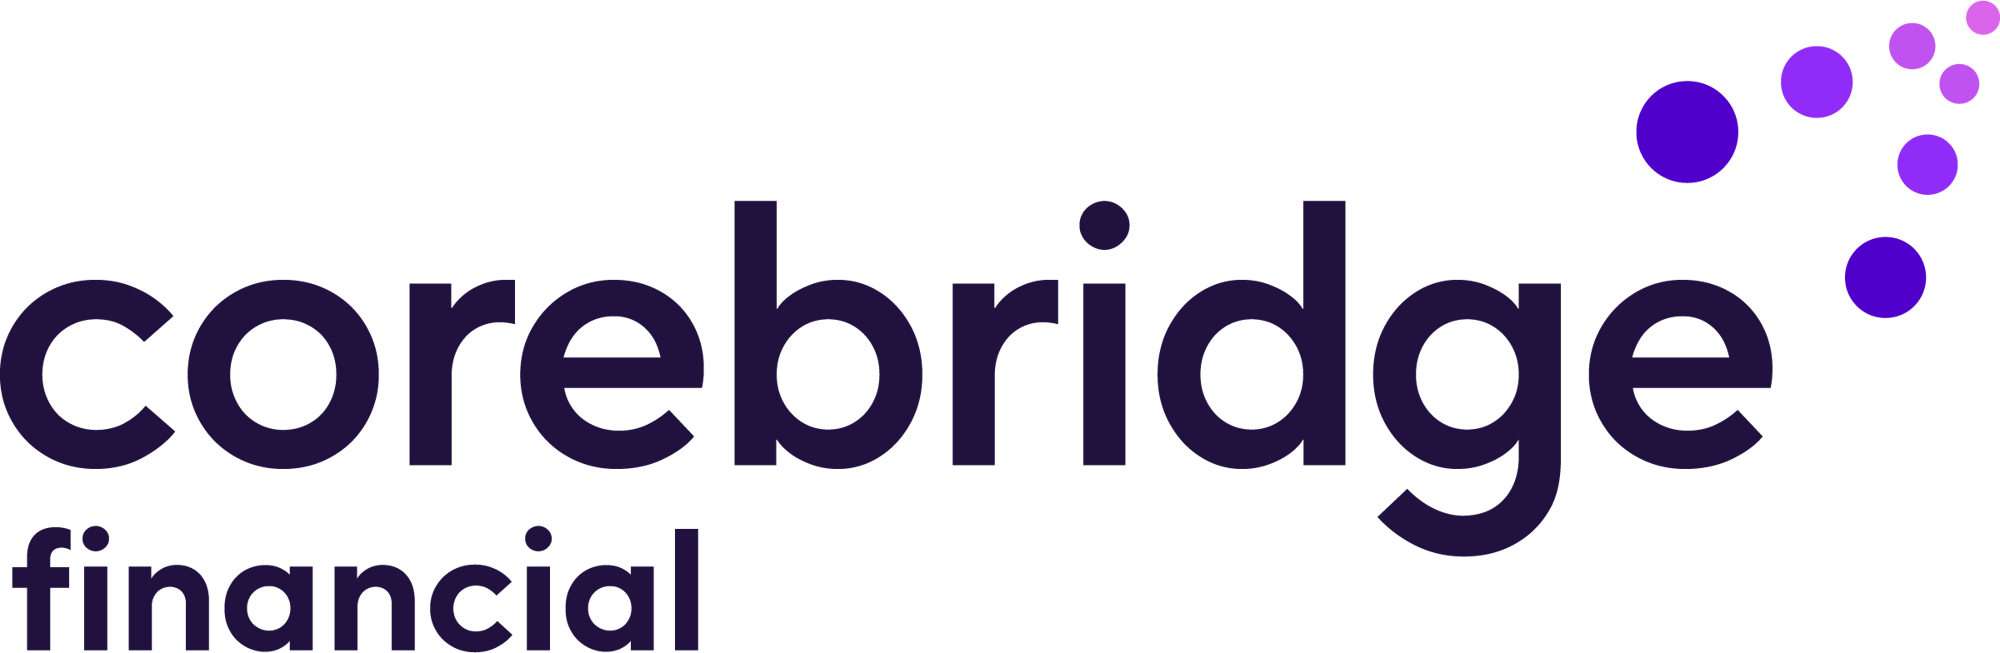 Corebridge_financial_rgb